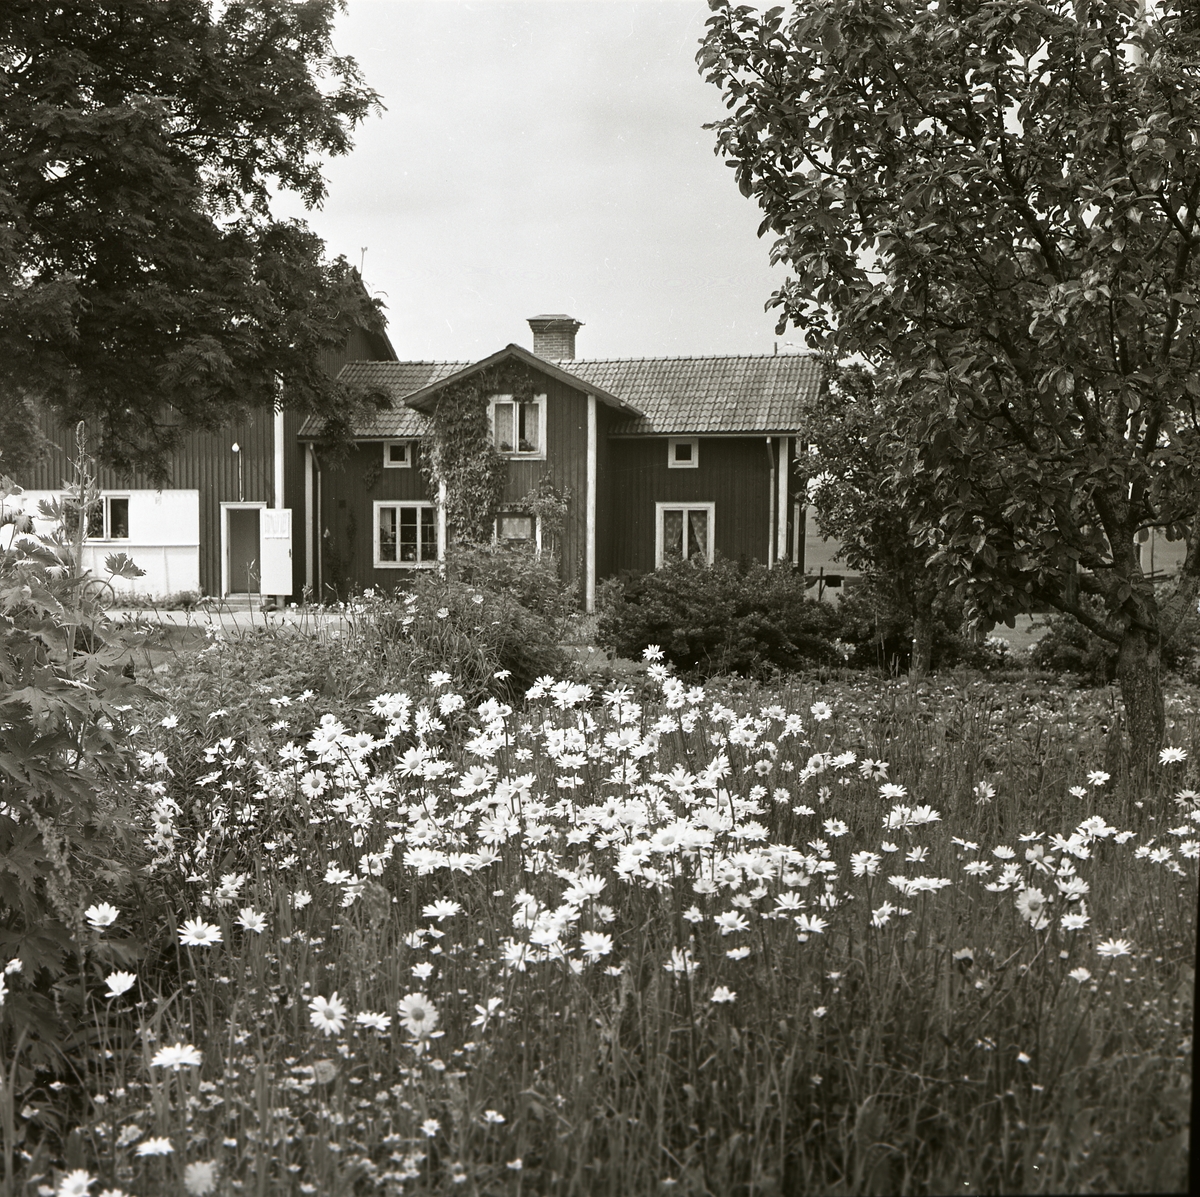 Sunnanåker med blommande trädgård, prästkragar och fruktträd, juni 1963.